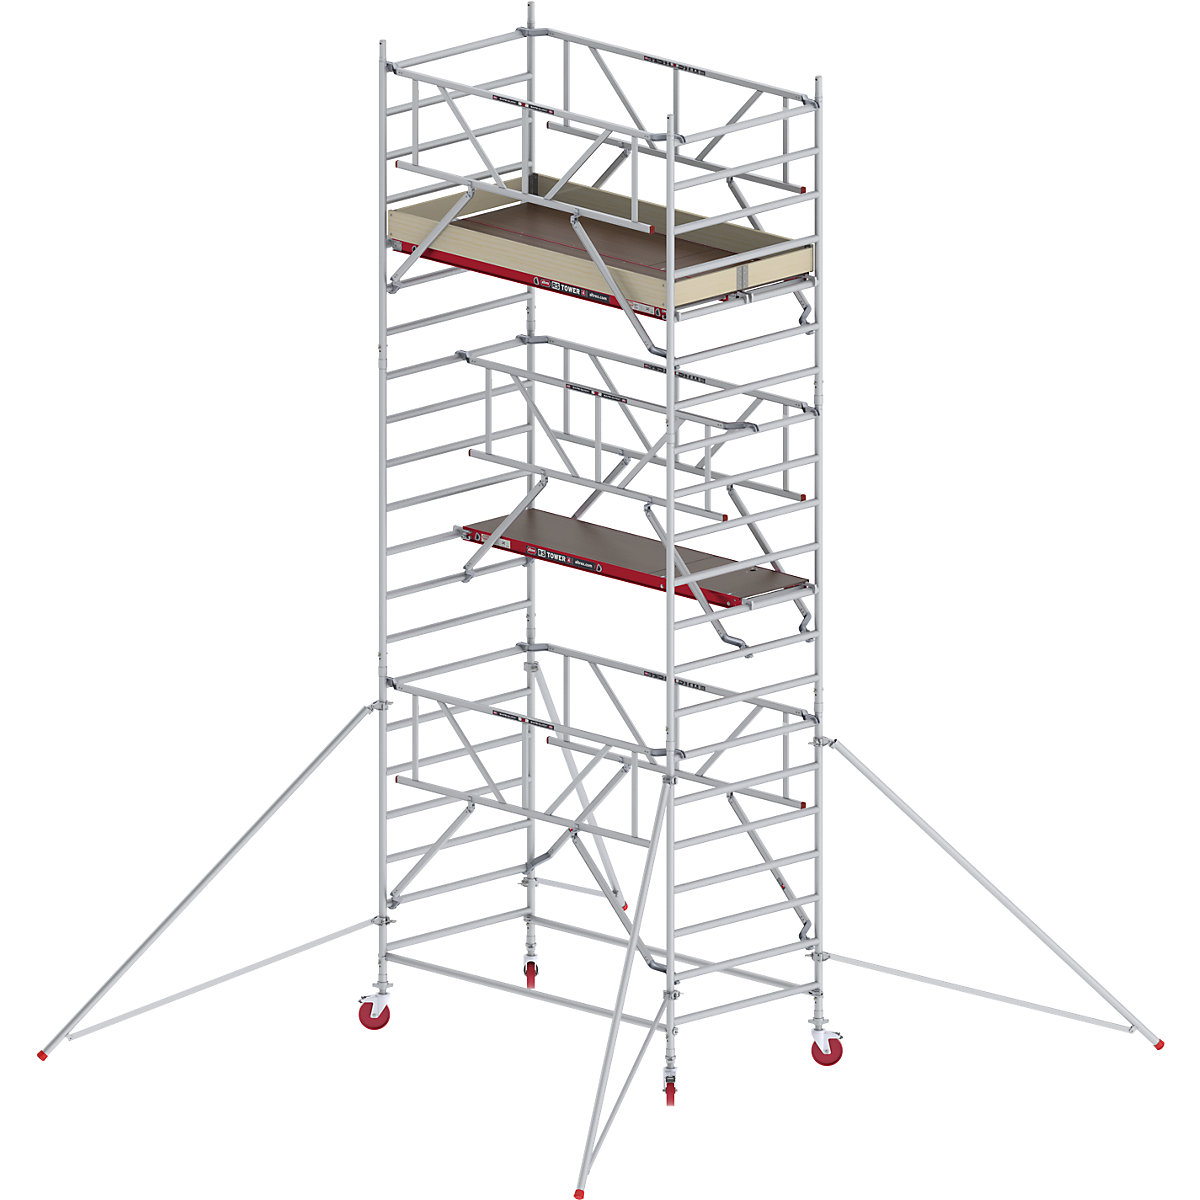 Rusztowanie ruchome RS TOWER 42, szerokie, z poręczą Safe-Quick® – Altrex, platforma drewniana, dł. 2,45 m, wys. robocza 7,20 m-6